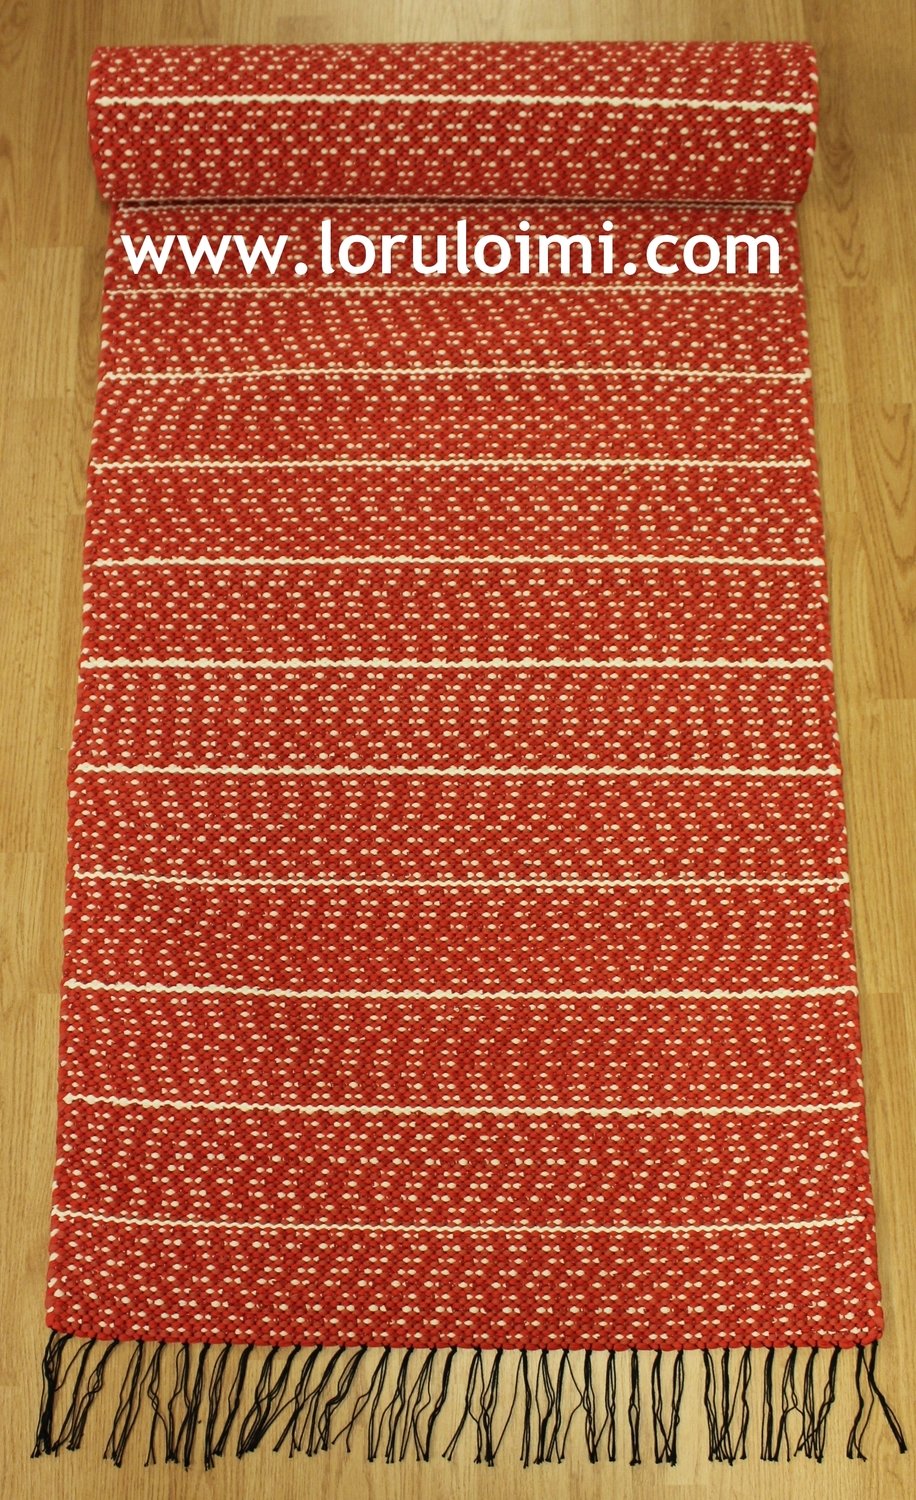 Pihlajanmarjat 2 - puna-oranssi-valkoraitainen matto